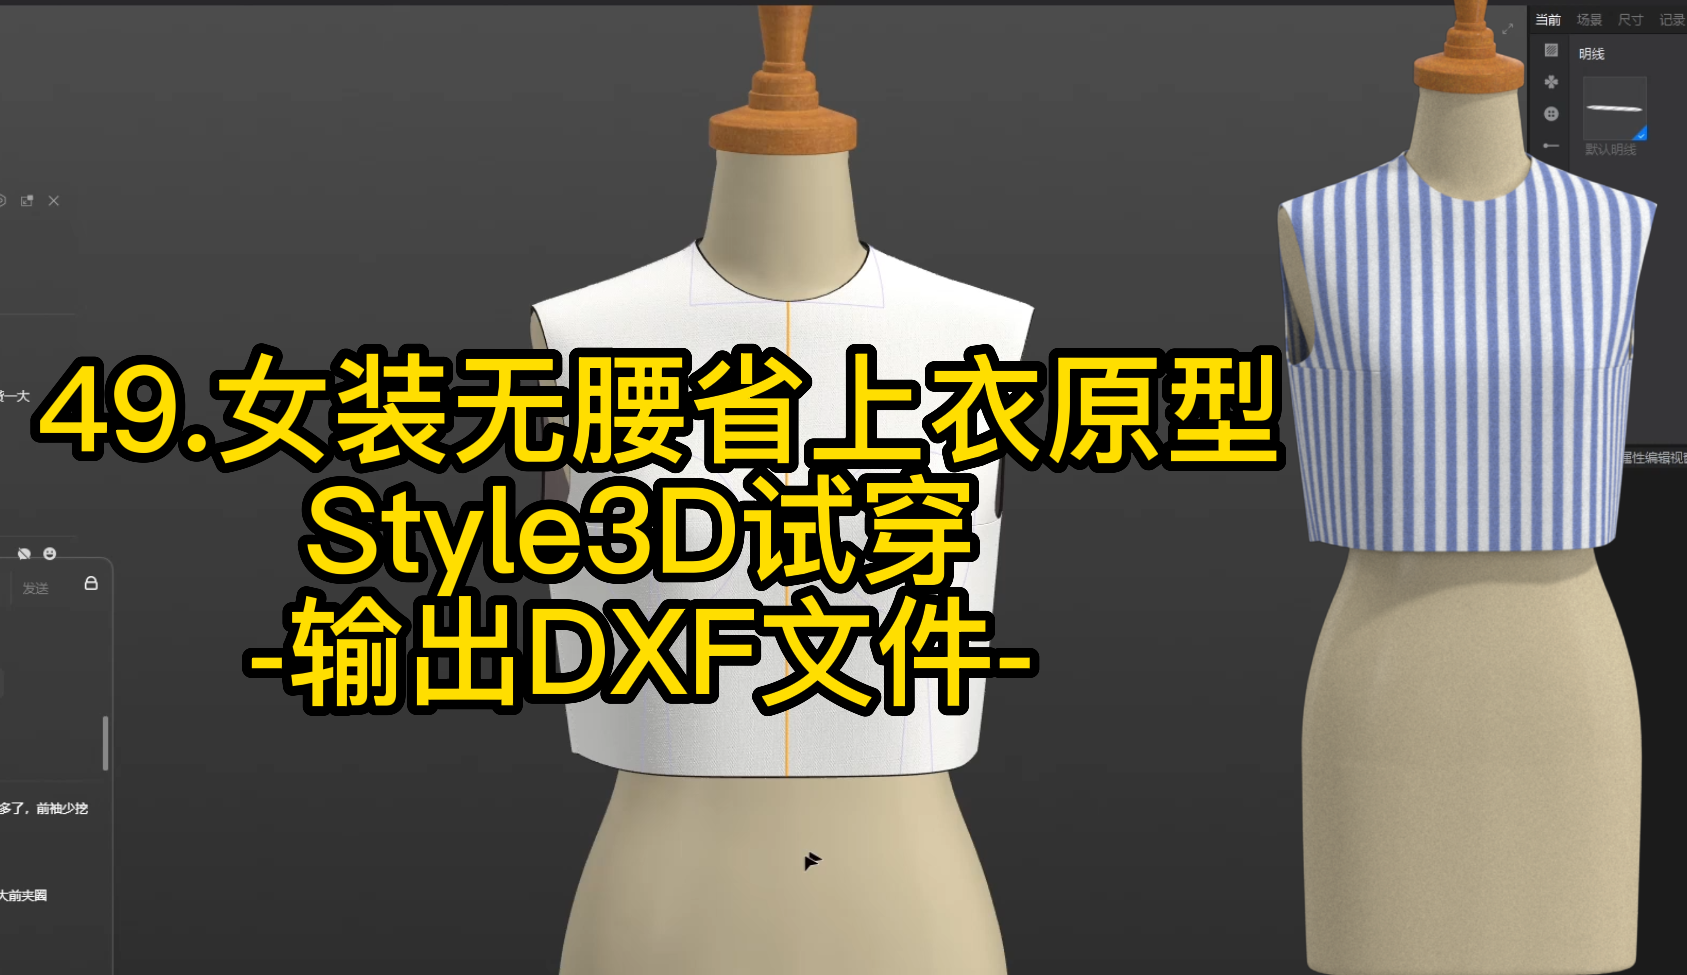 49.女装无腰省上衣原型Style3D试穿-输出DXF文件